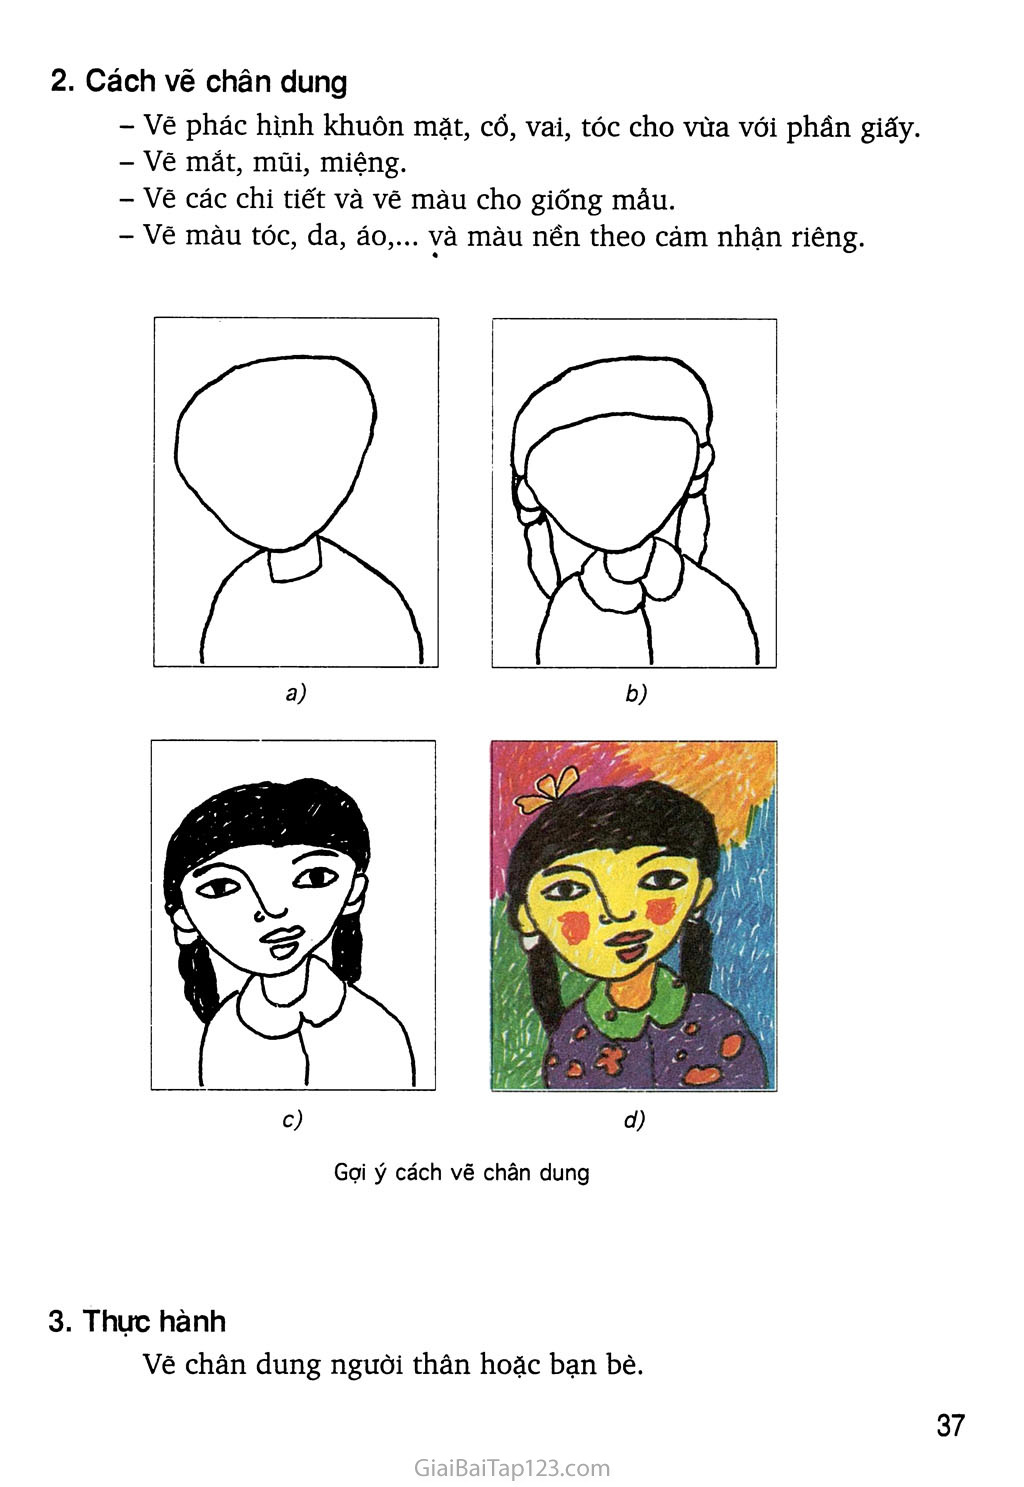 Tutorial Cách vẽ chân dung lớp 7 với những mẹo vẽ đơn giản